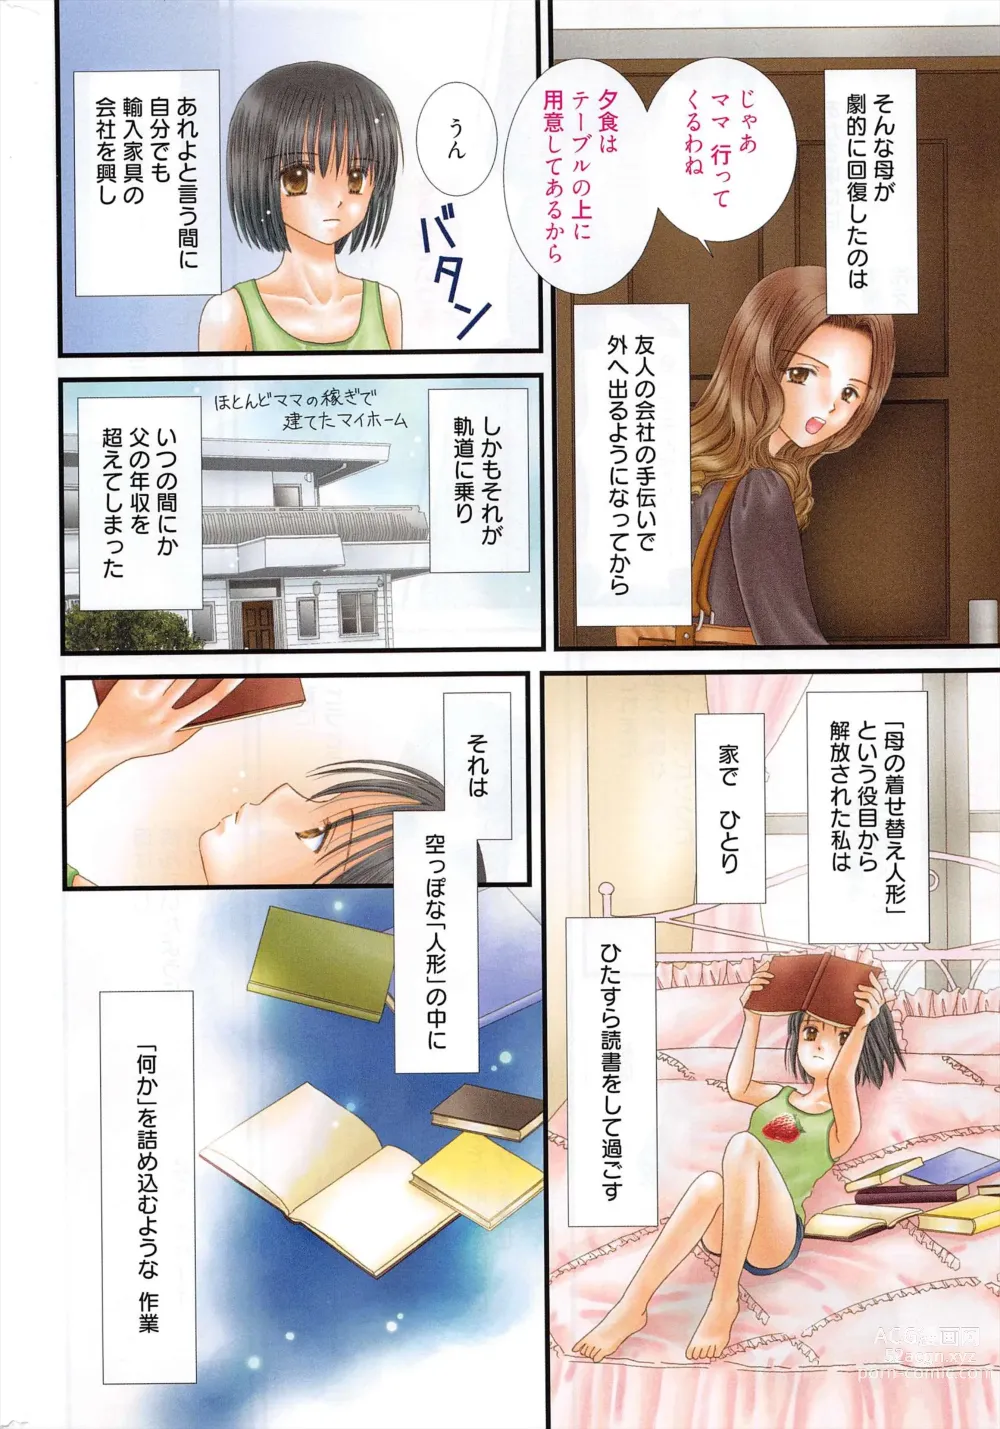 Page 333 of manga Manga Bangaichi 2012-09